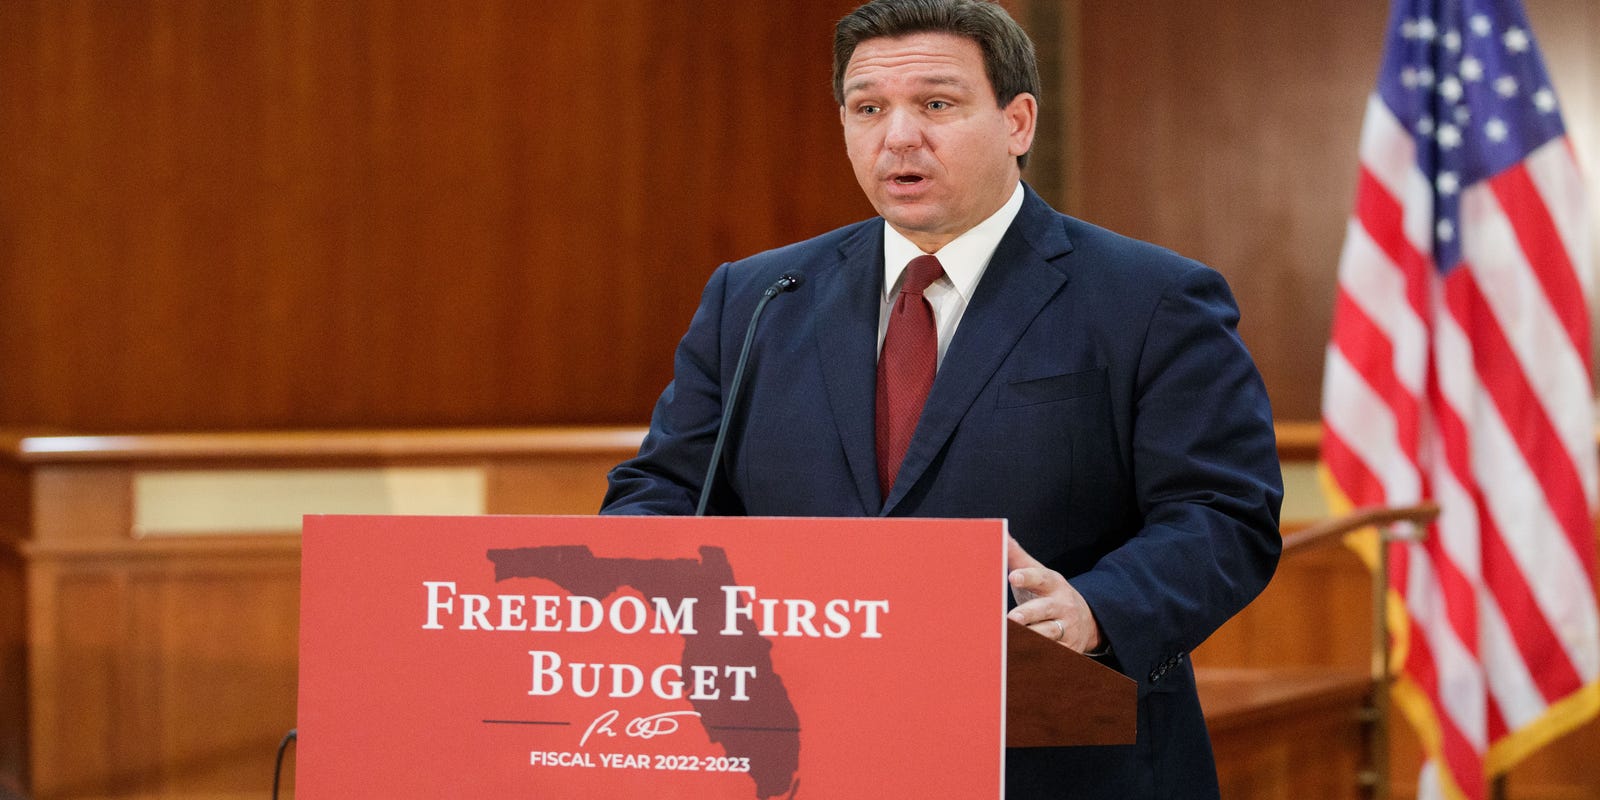 Florida Gov. DeSantis announces $99.7 billion proposed election-year budget